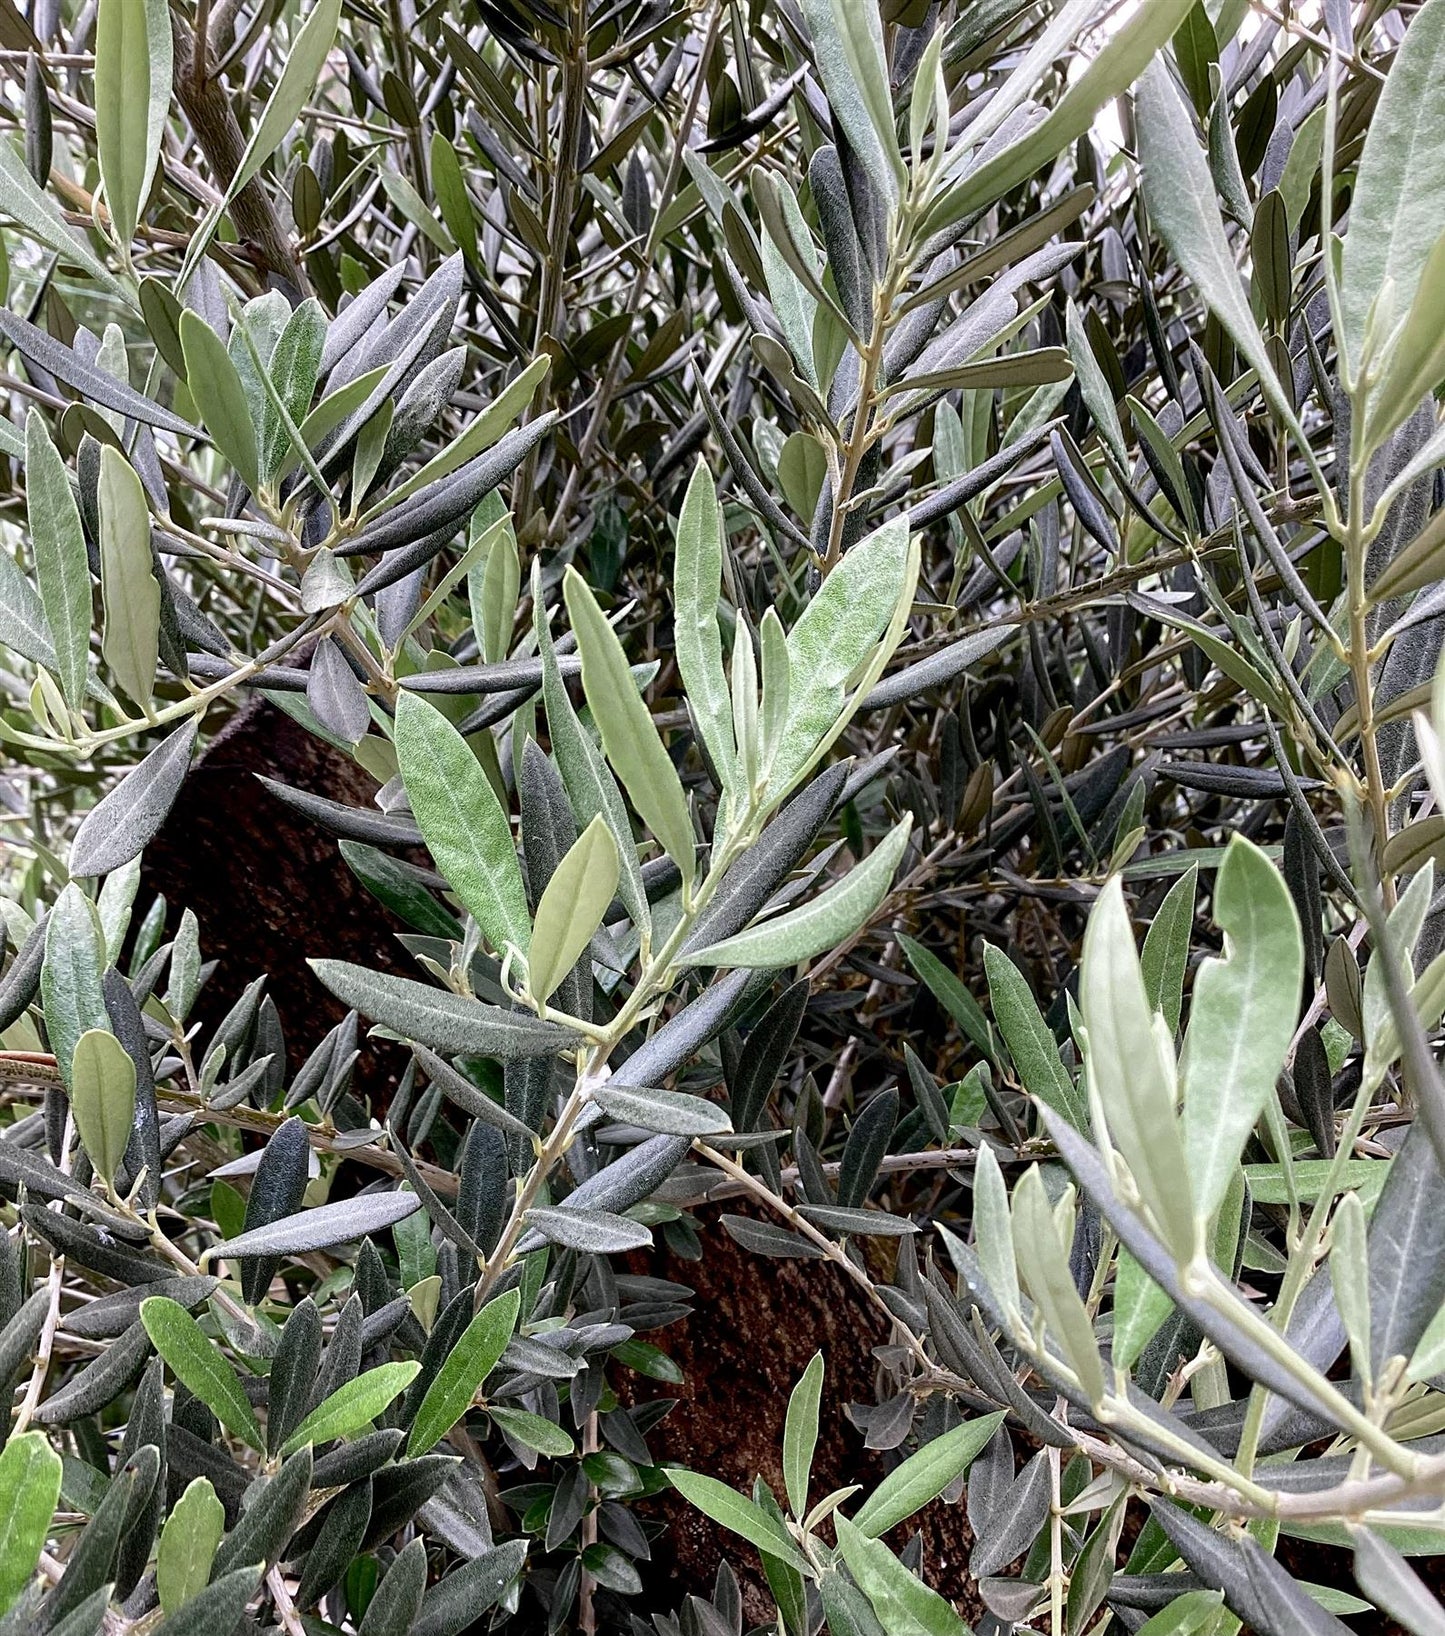 Olive Tree | Olea Europea 1/2 Standard Girth 55-65cm - 220-240cm, 130lt